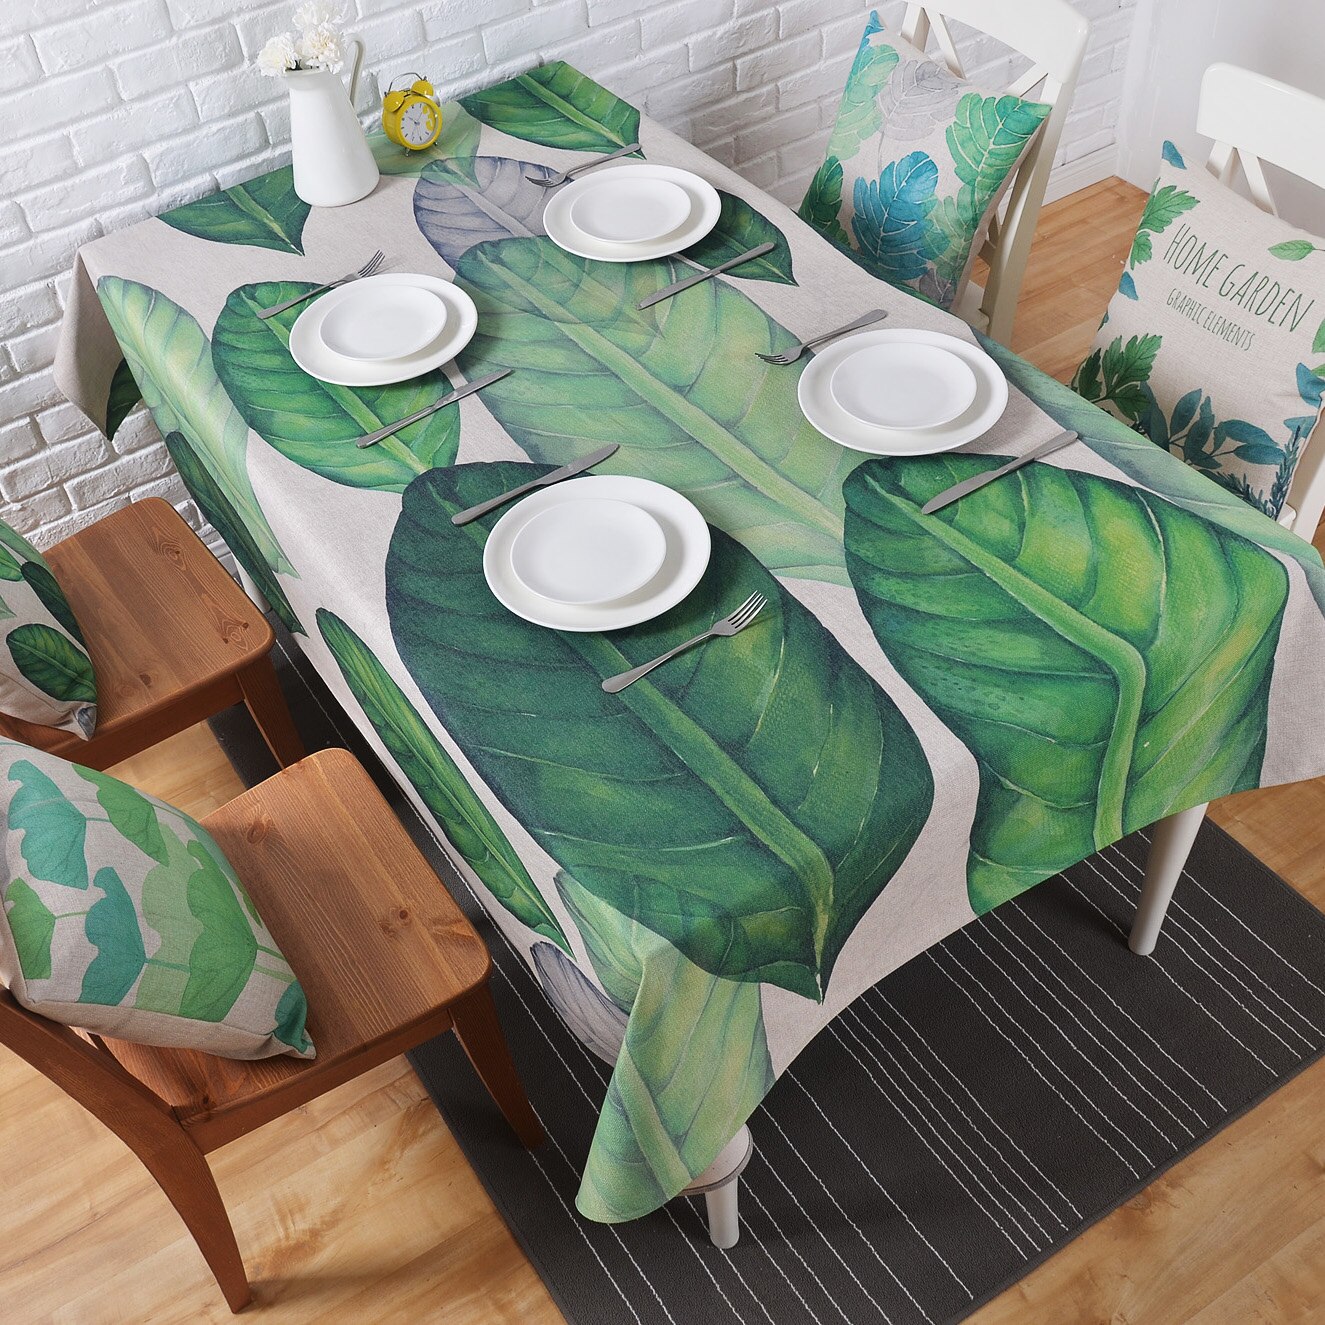 Honlaker Moderne Pastorale Style Rectangulaire Table Tissu Table Ronde Couverture De Toile de Coton Nappe